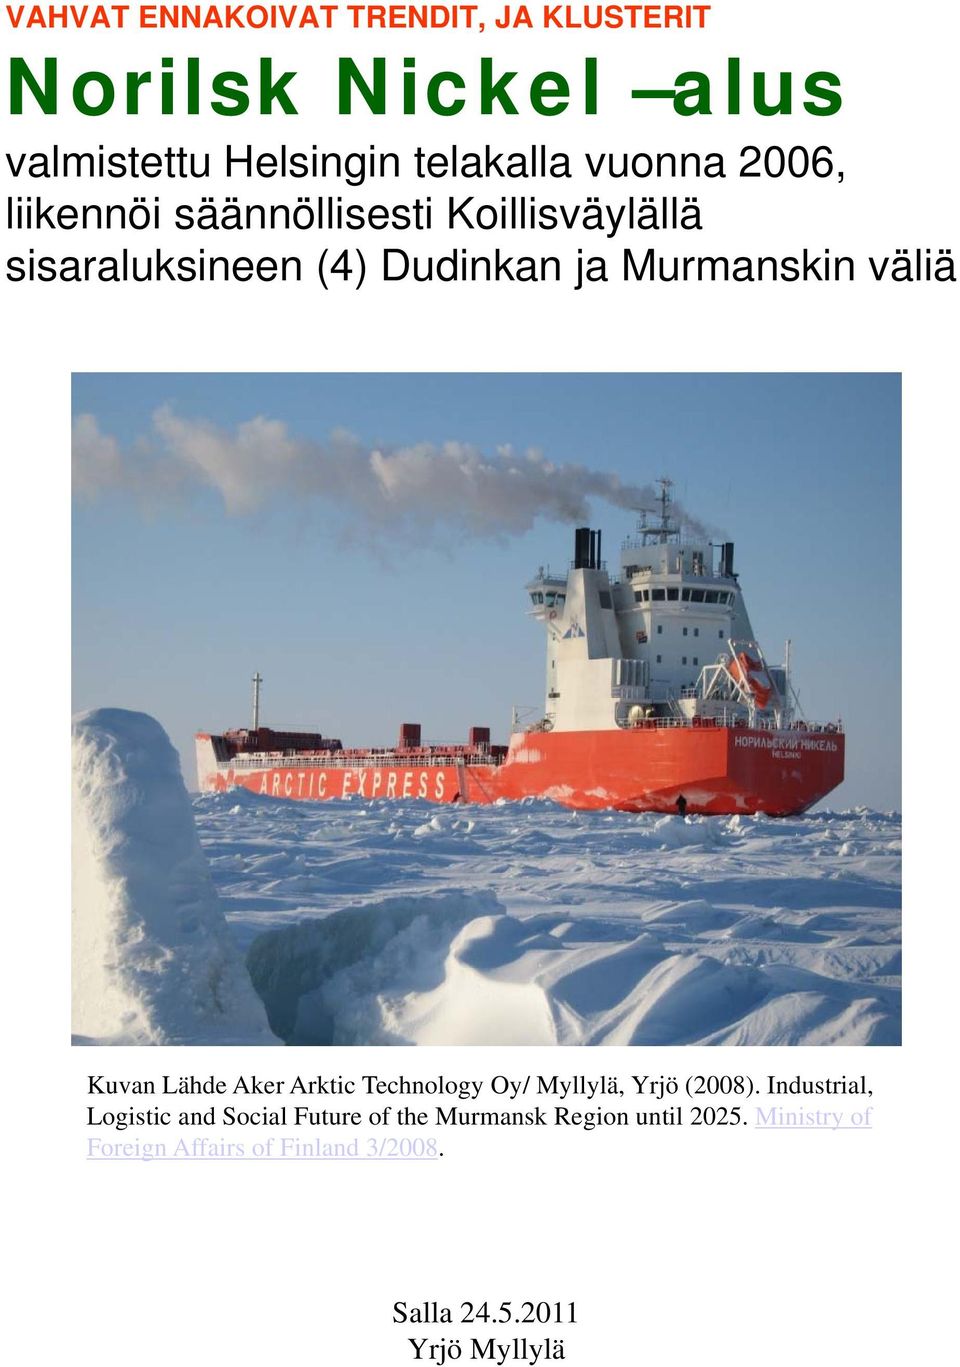 Murmanskin väliä Kuvan Lähde Aker Arktic Technology Oy/ Myllylä, Yrjö (2008).